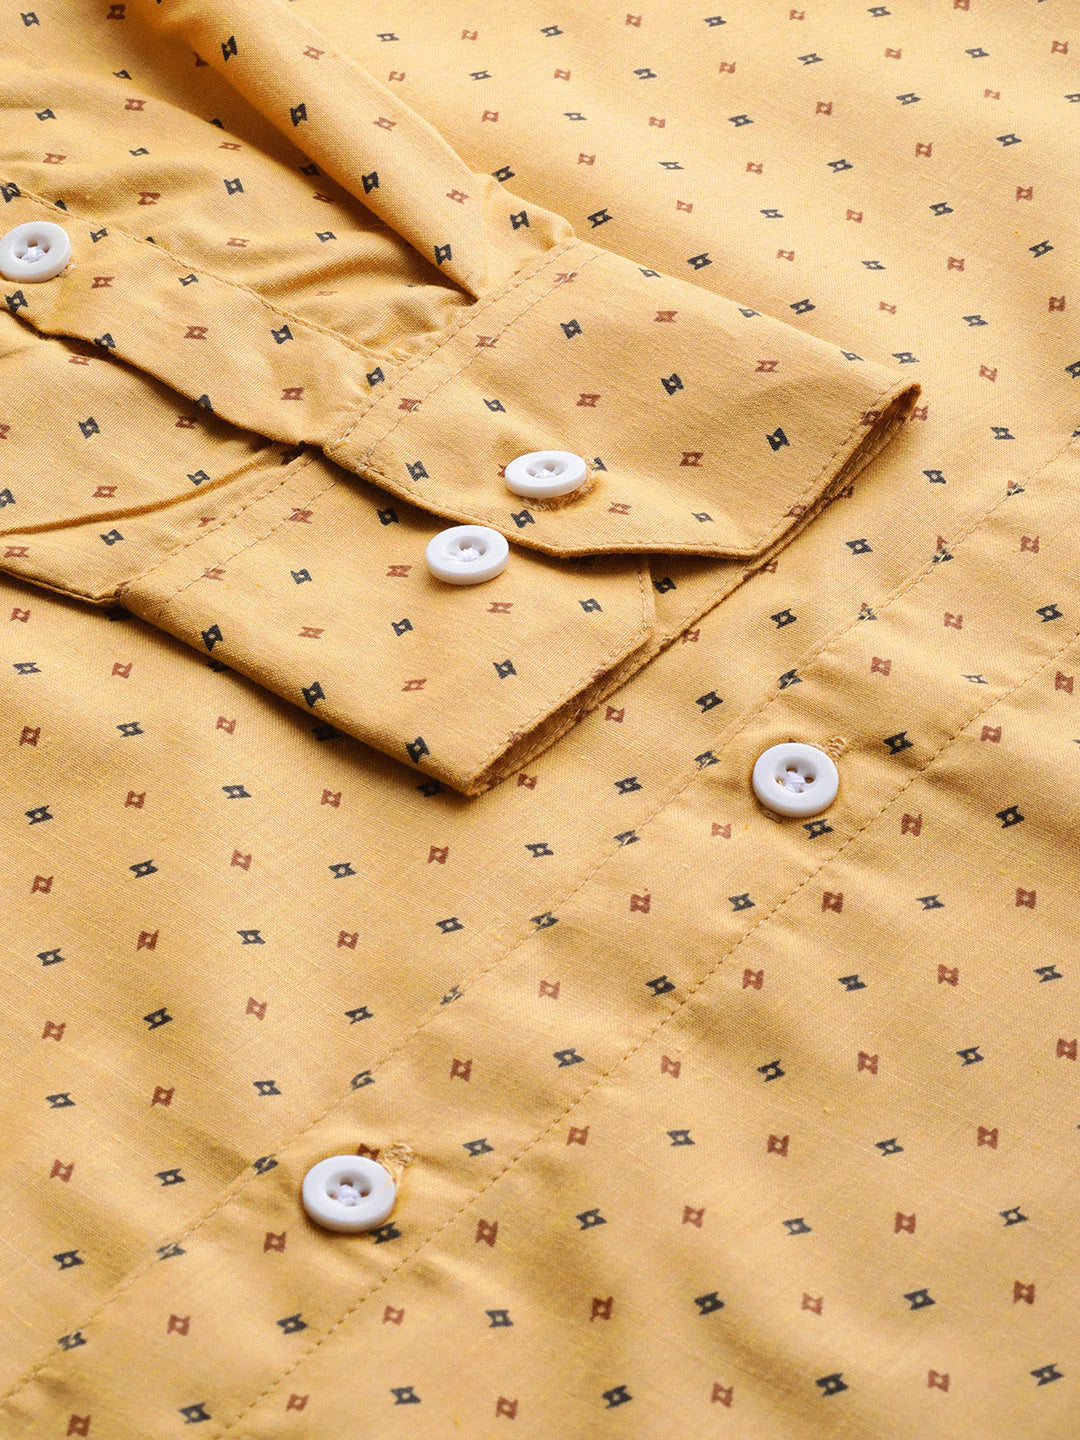 Jainish Yellow Men's Cotton Printed Formal Shirts ( SF 716Mustard )